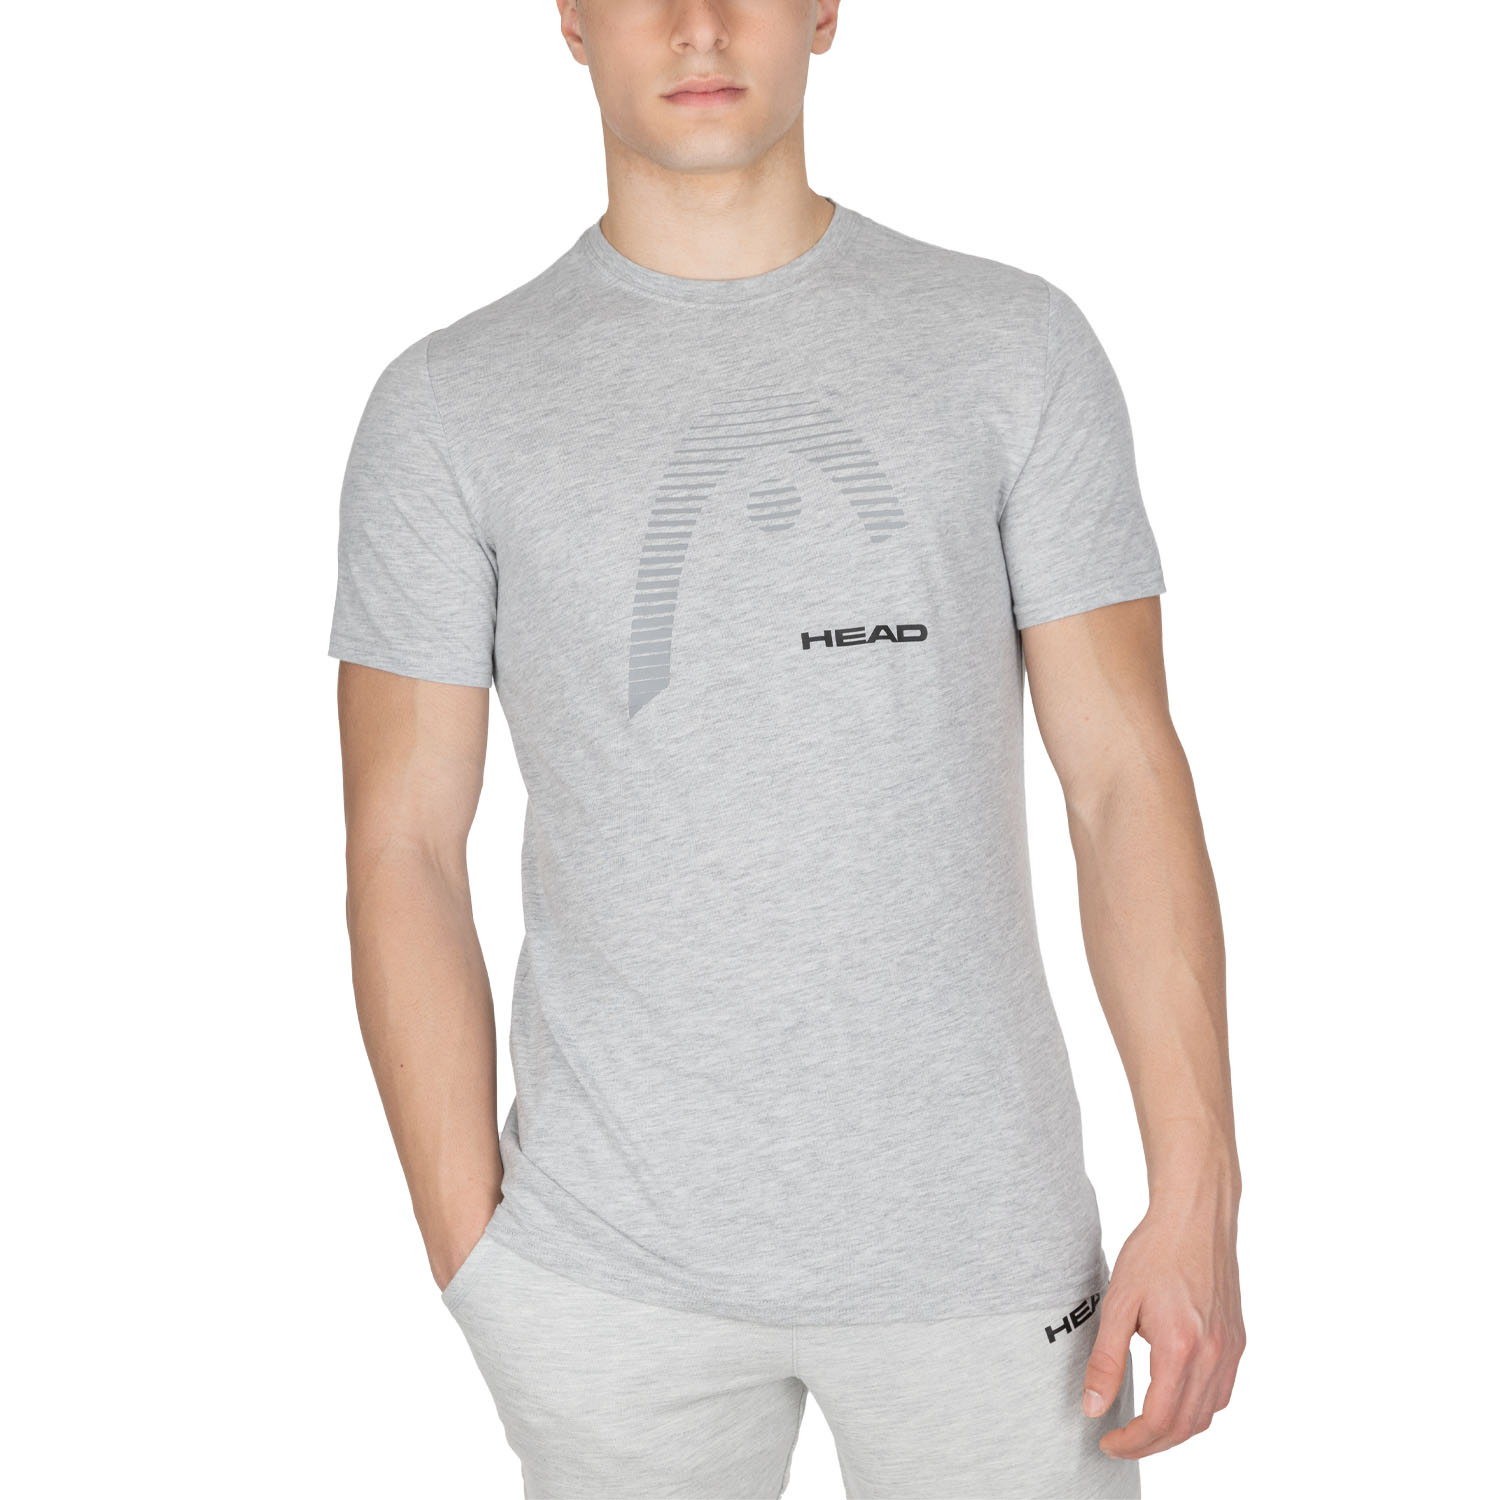 Head Club Carl Camiseta - Grey Melange